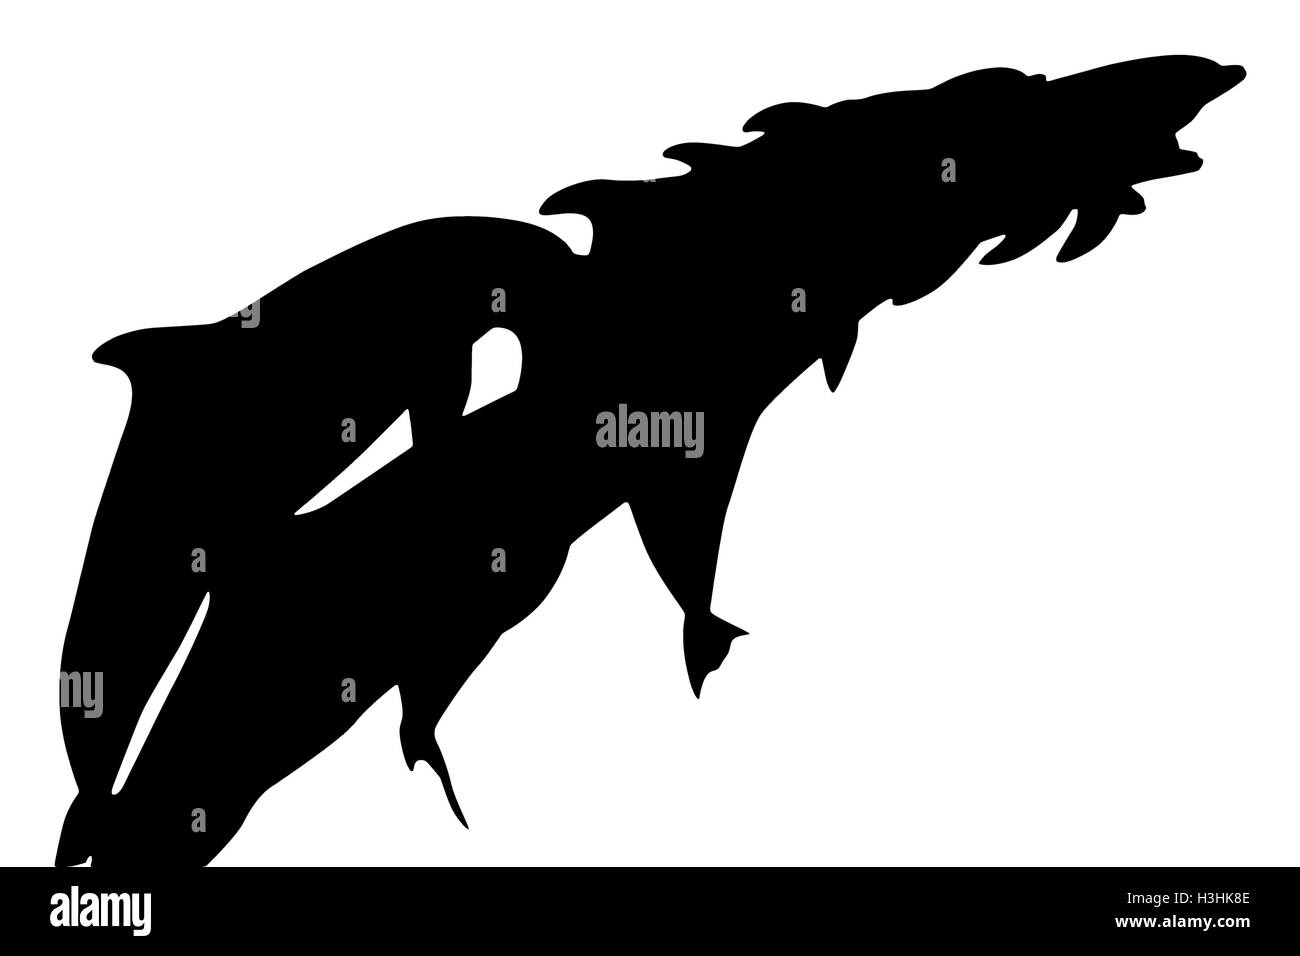 Gruppe der Dolphins Silhouette seitlich gesehen beim springen zusammen. Isoliert auf weißem Hintergrund. Stockfoto